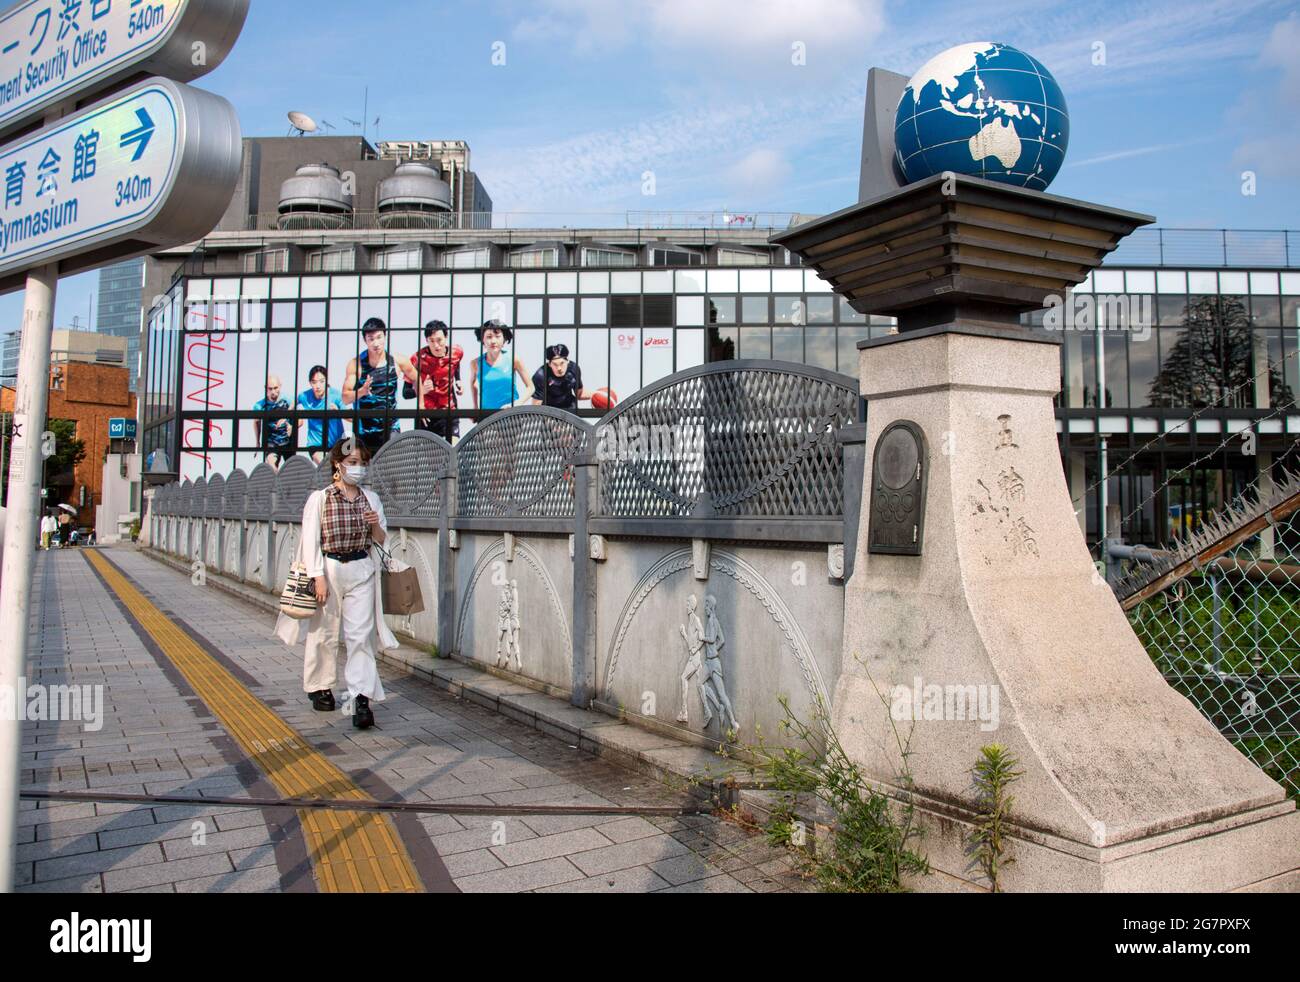 Los peatones pasan por el puente olímpico cerca del parque Yoyogi, Tokio, el 21 de junio de 2021. Mientras que el puente formaba parte de un nuevo sistema de carreteras construido antes de los Juegos Olímpicos de 1964, los globos terráqueos sobre los pilares y relieves de piedra de temática olímpica se añadieron más de 25 años después. Robert Gilhooly foto Foto de stock